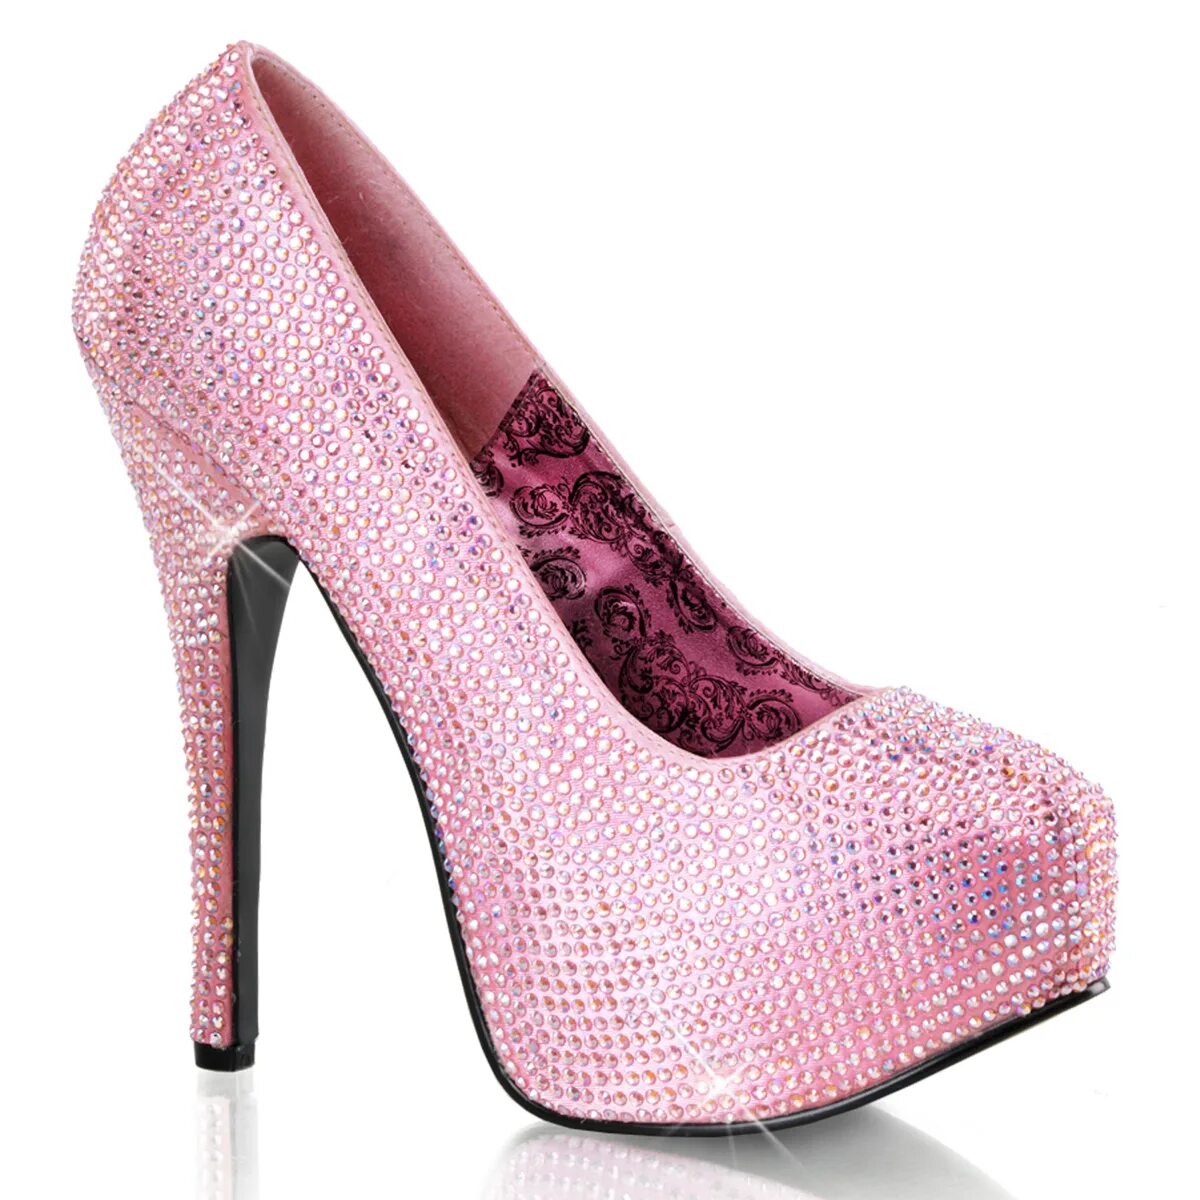 Туфли Studio Pollini розовые шпильки. Туфли розовые Demonia блестящие. Bordello туфли. Розовые туфли на каблуке. Розовые туфли есть